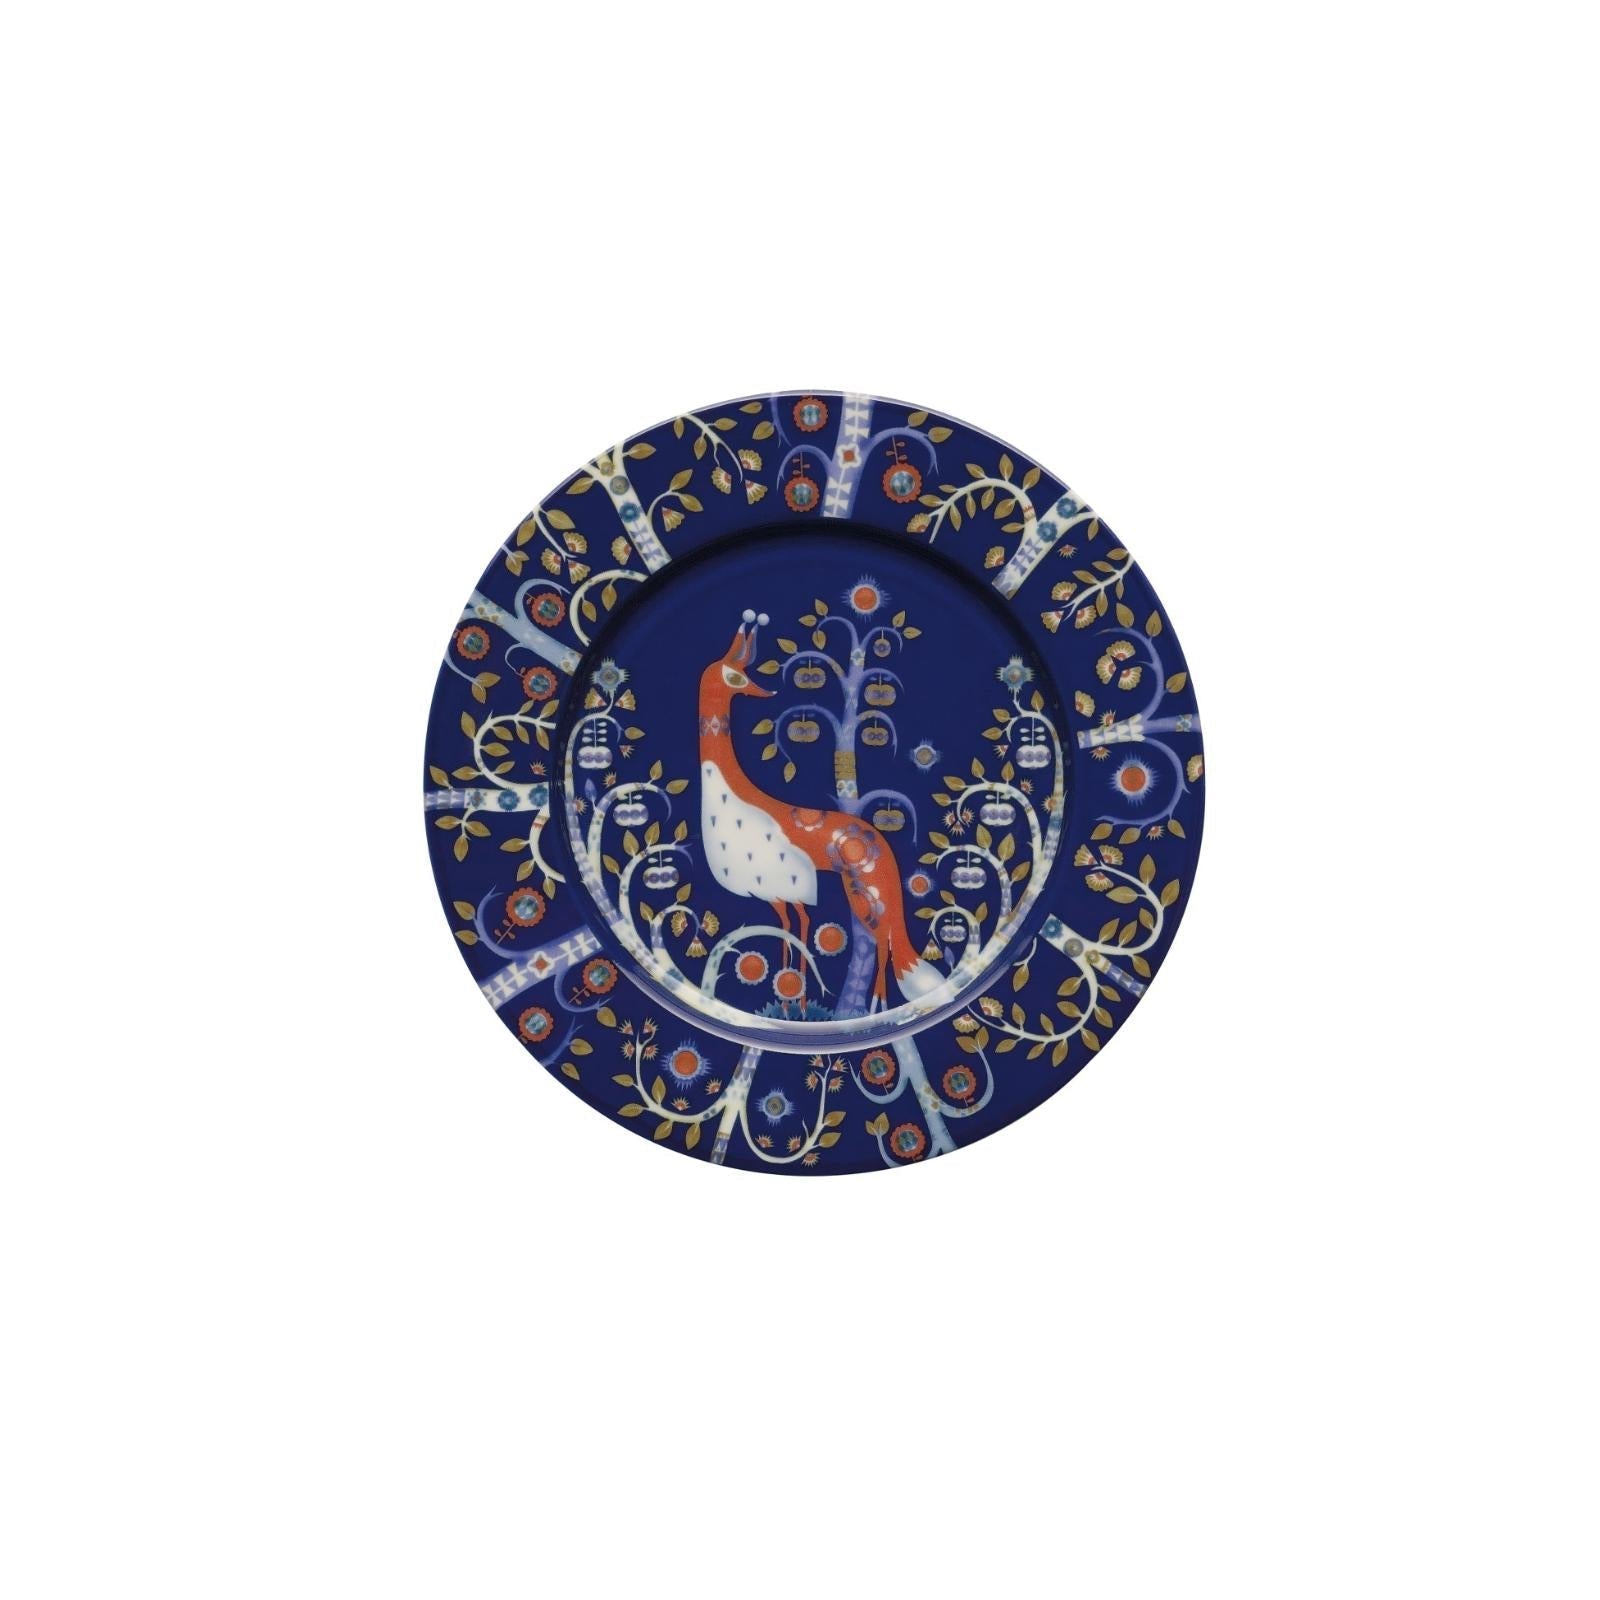 Iittala Taika Teller Flach Blau, 22cm-Frühstücksteller-Iittala-7320065004960-1012442-IIT-inwohn